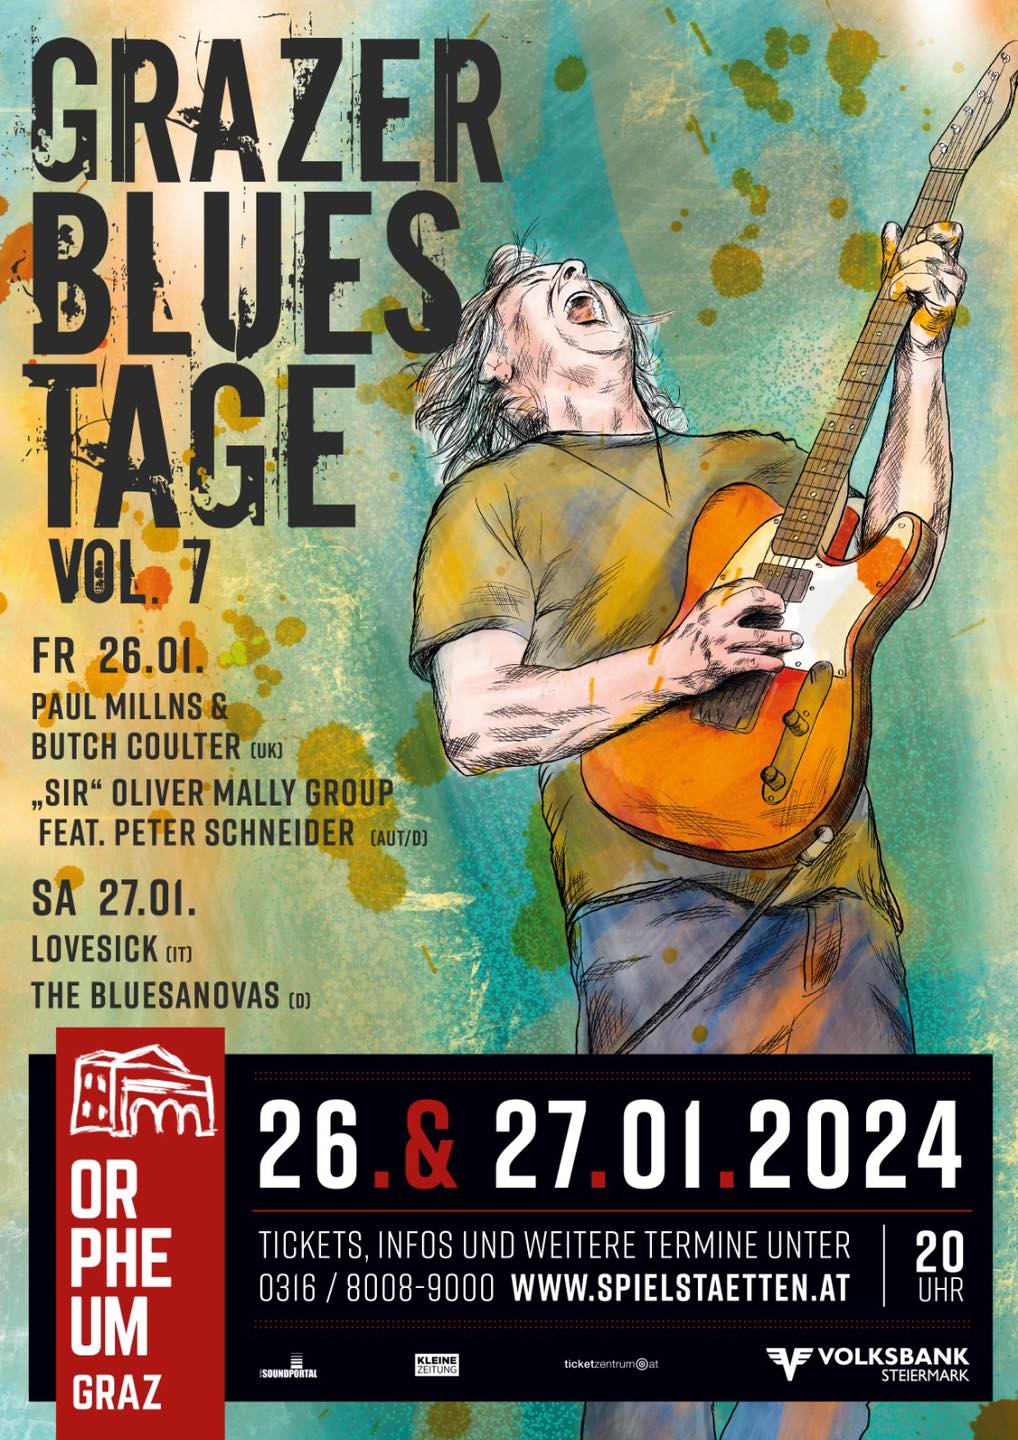 Grazer Bluestage Vol. 7